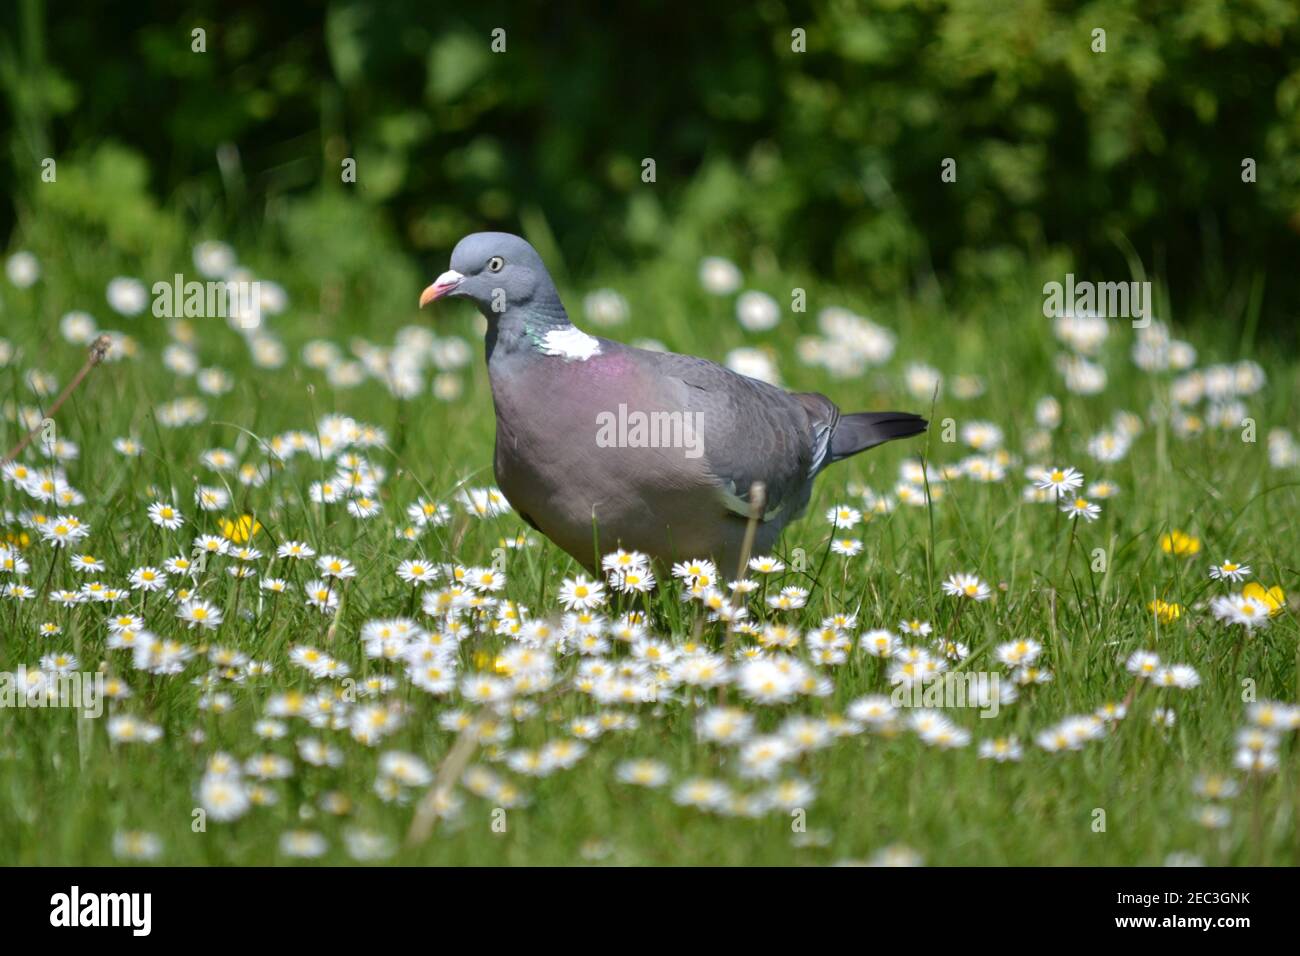 Vogel - Taube Spaziergang durch EINEN Garten unter einigen Gänseblümchen - Asteraceae Familie - Yorkshire - UK Stockfoto